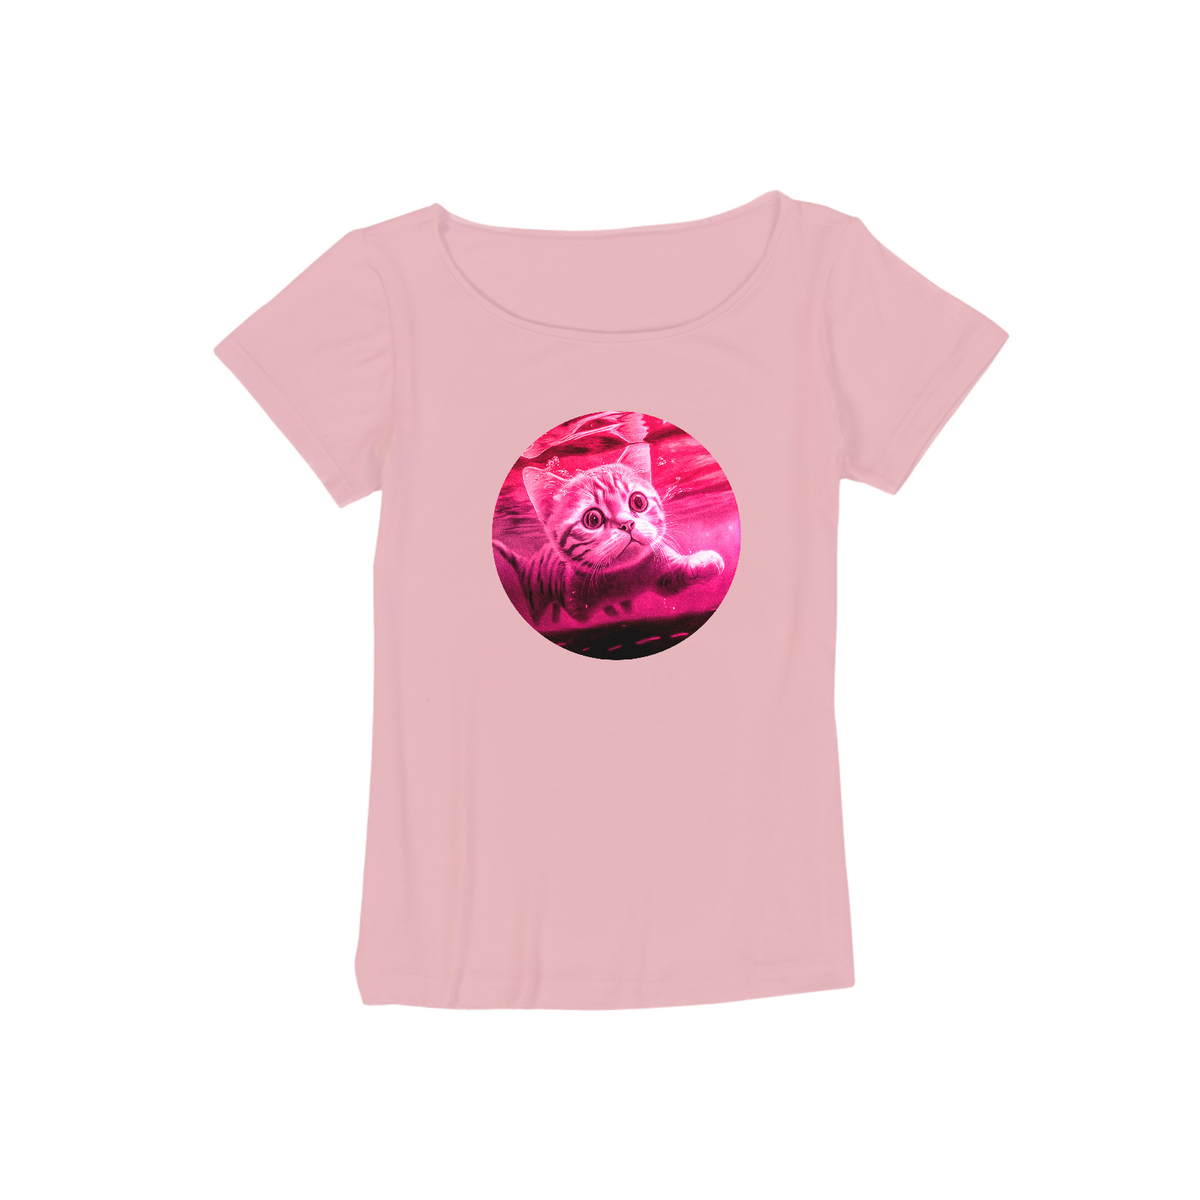 Nome do produto: T-shirt Canoa - viscolycra feminina, produto com malha ecológica